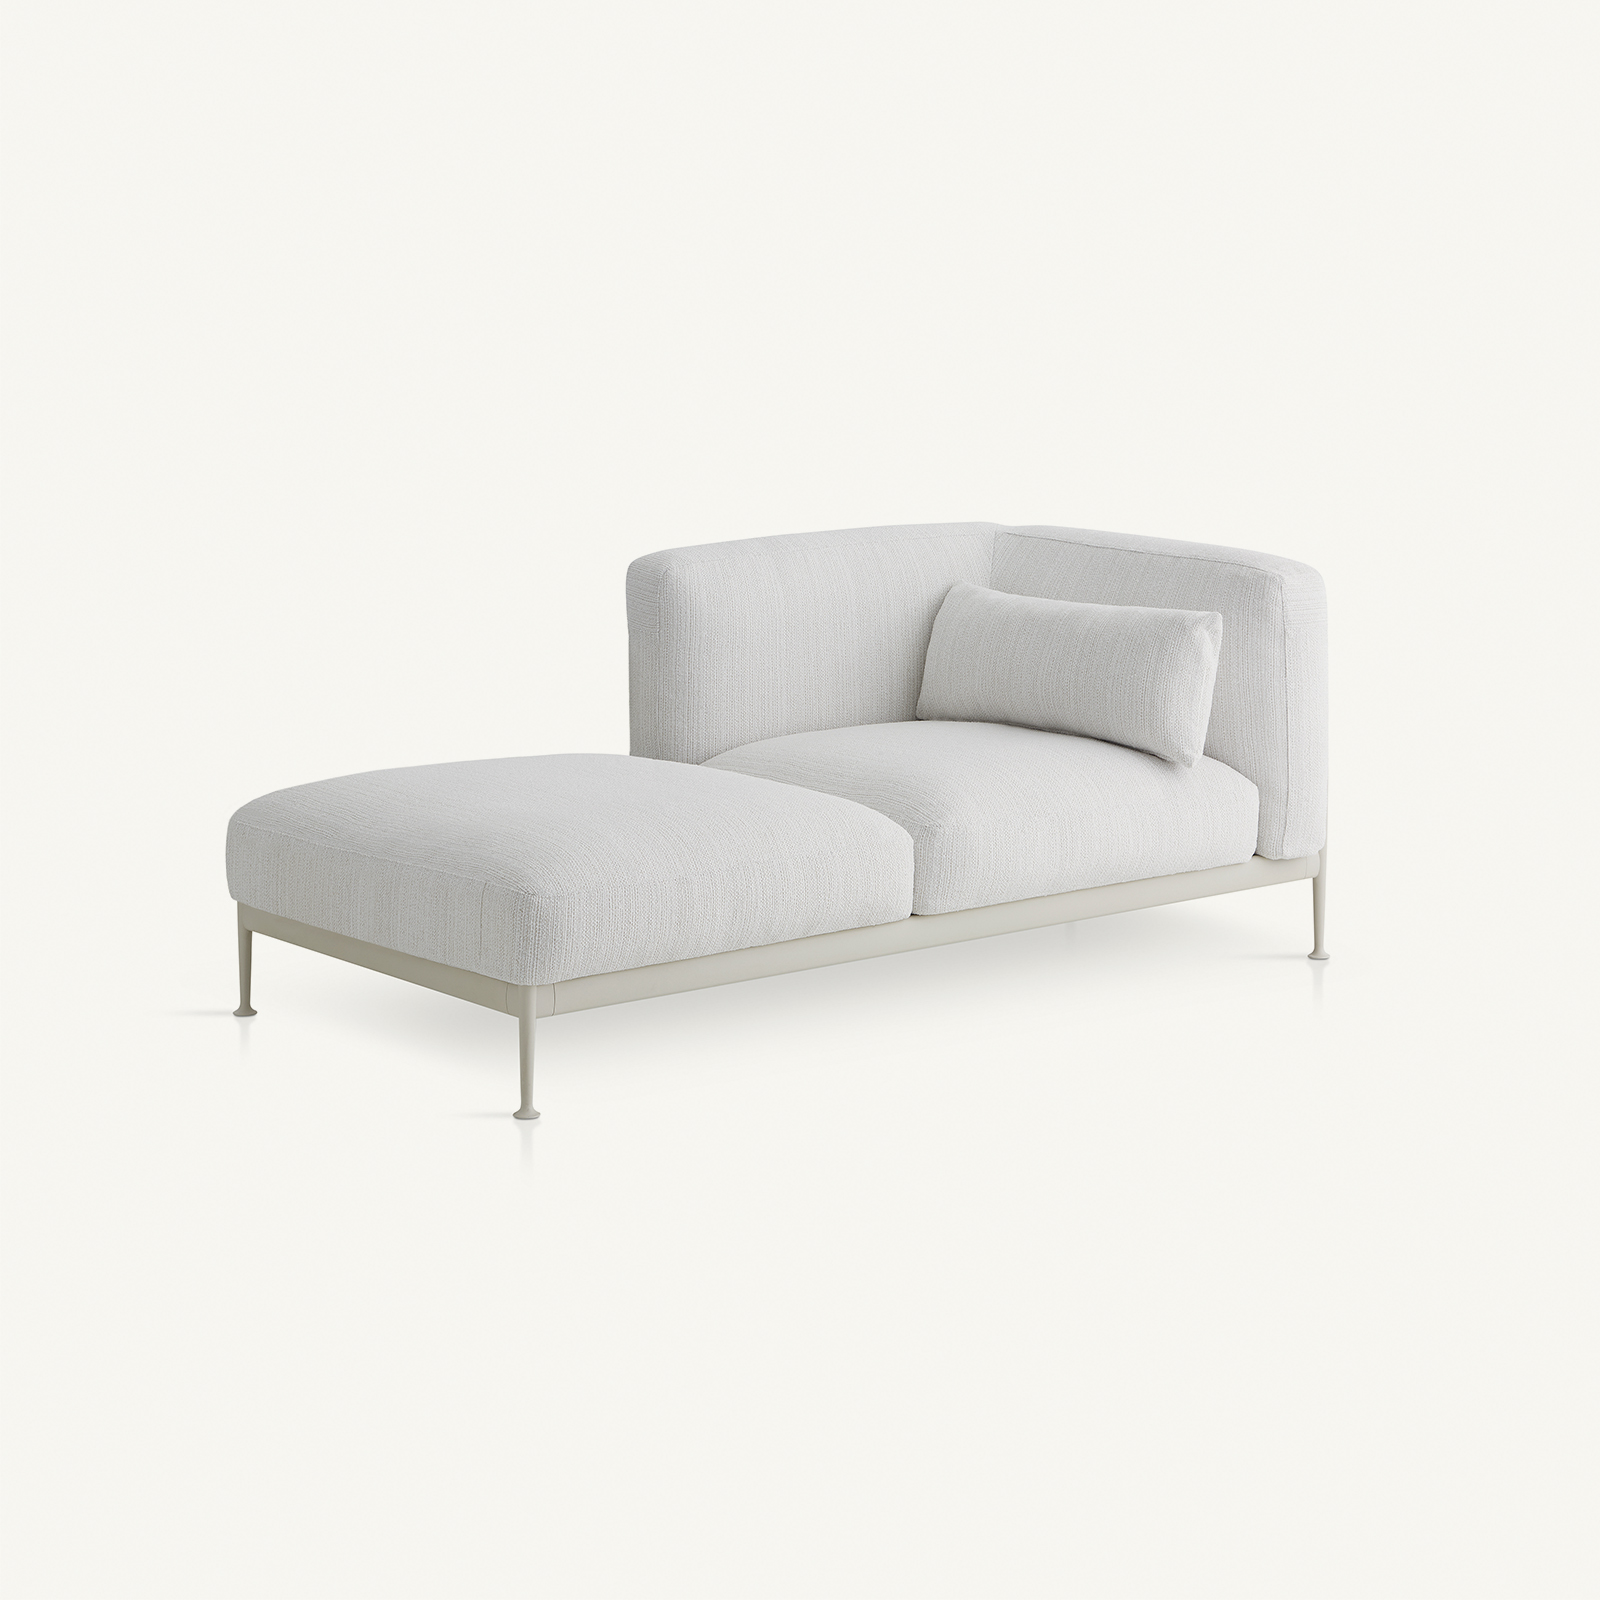 muebles de exterior - sofás - módulo chaise longue izq. obi